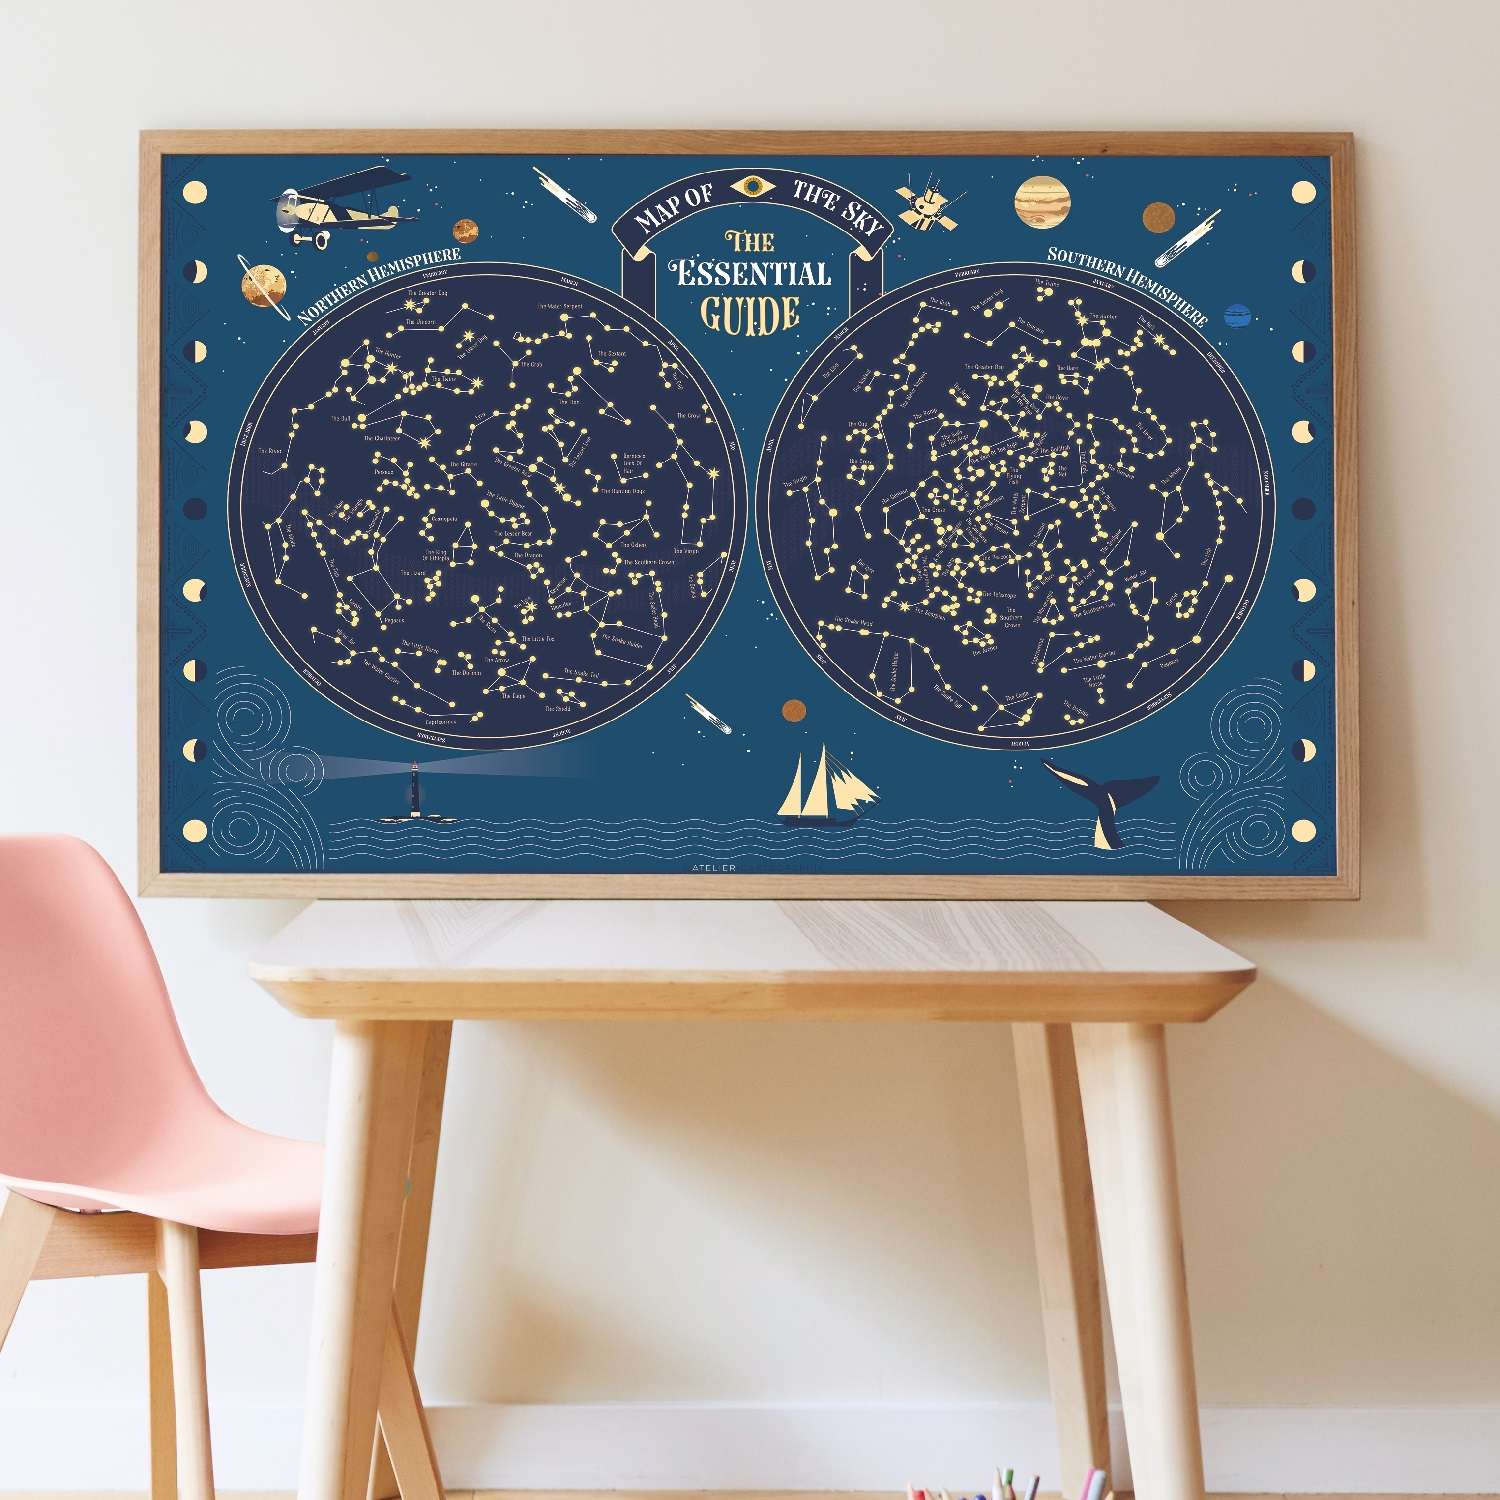 Постер из наклеек Poppik Карта неба с созвездиями/светится в темноте - фото 2